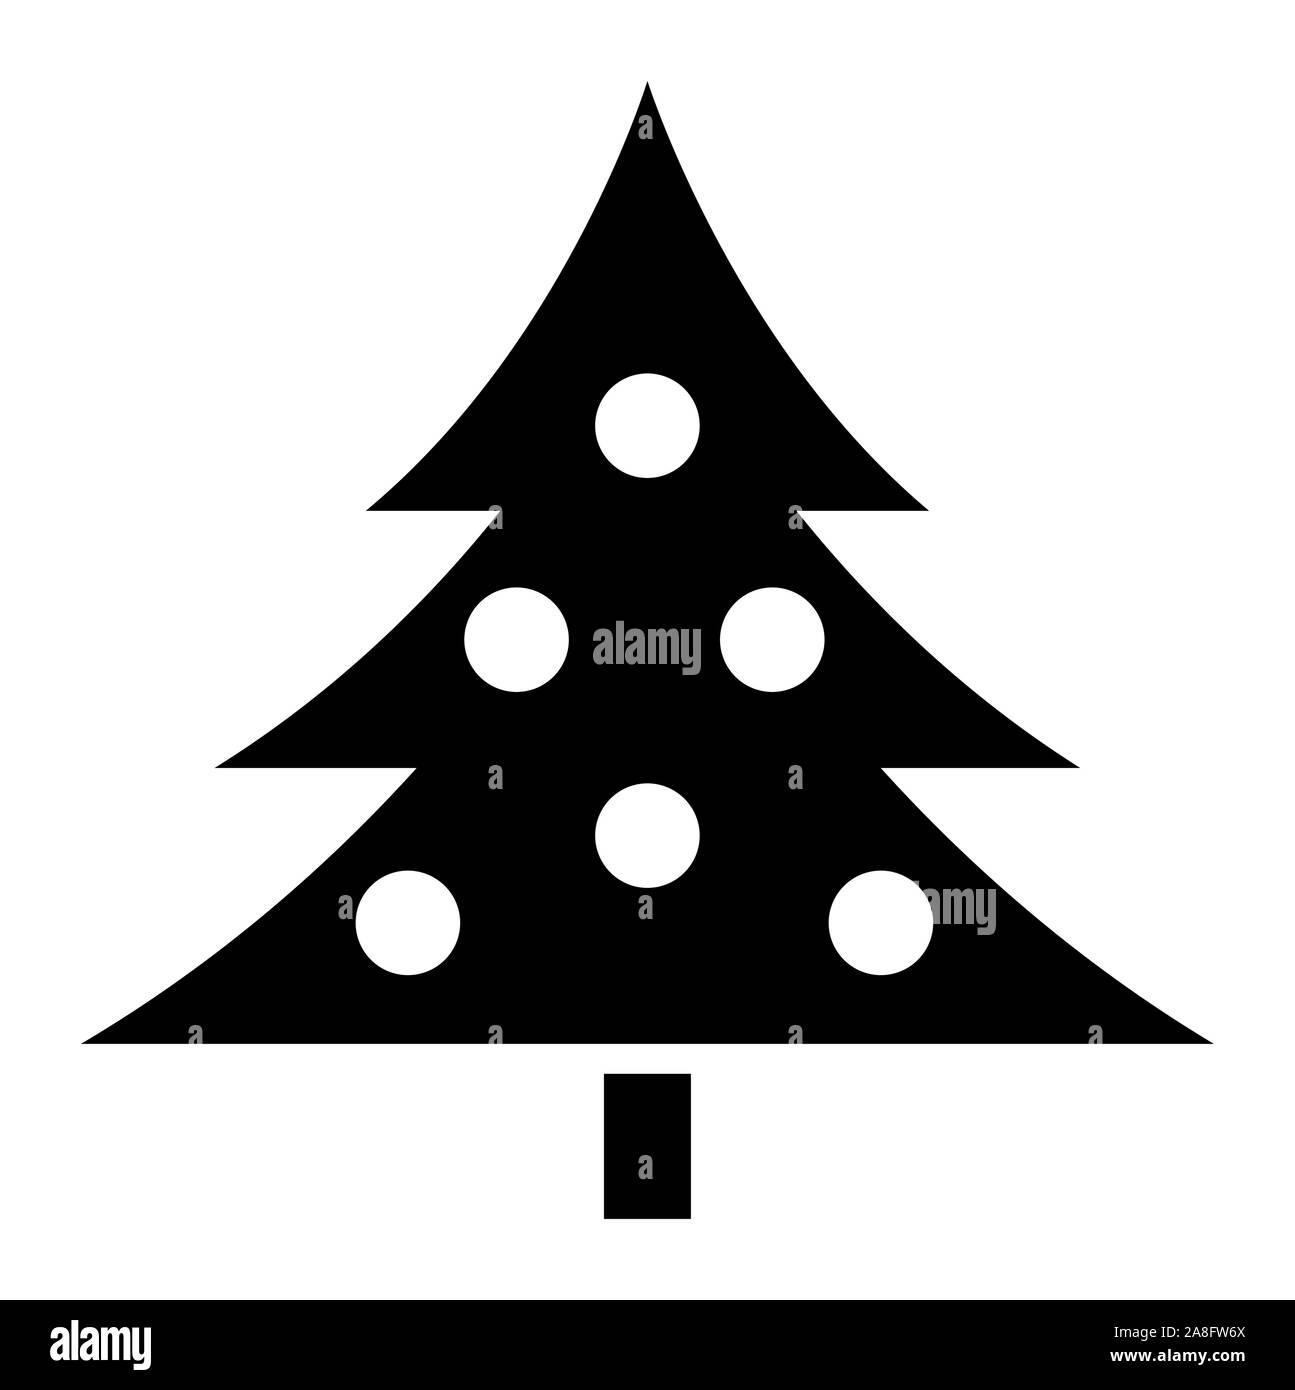 Arbre de Noël Icône noire | Sapin Adornment Illustration | x-mas isolé symbole | Logo | Illustration de Vecteur